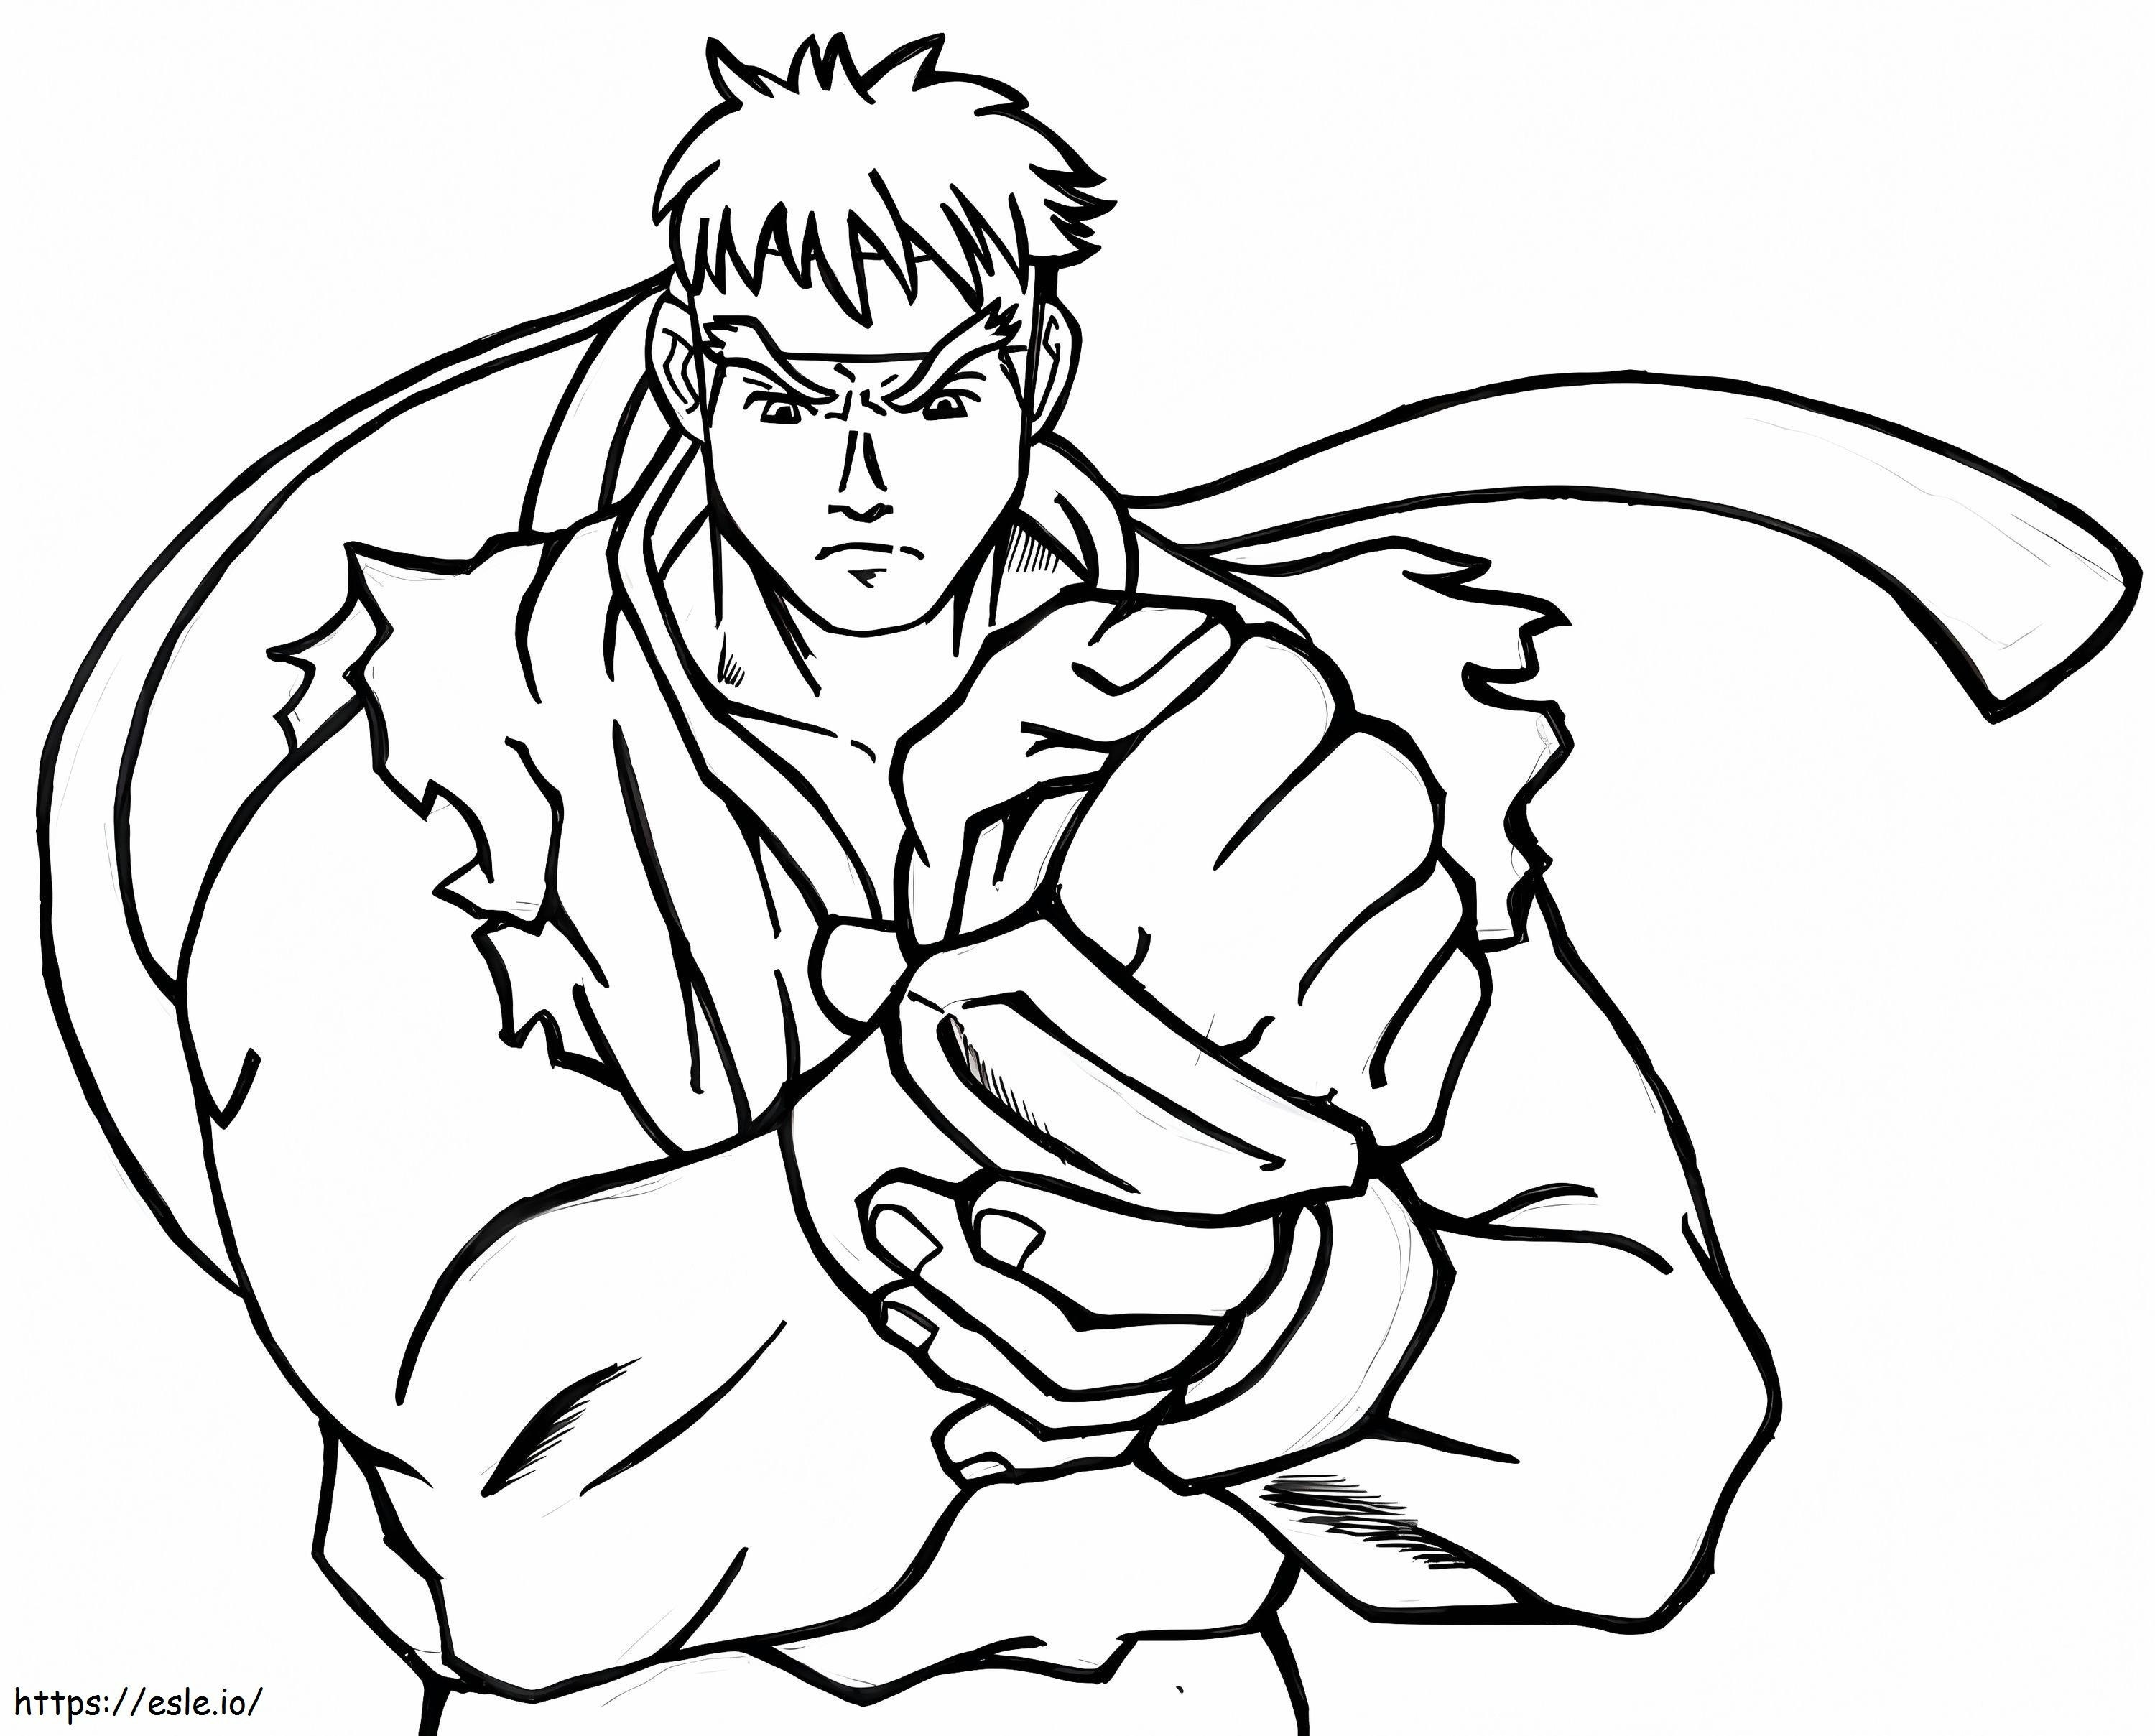 Siisti Ryu värityskuva